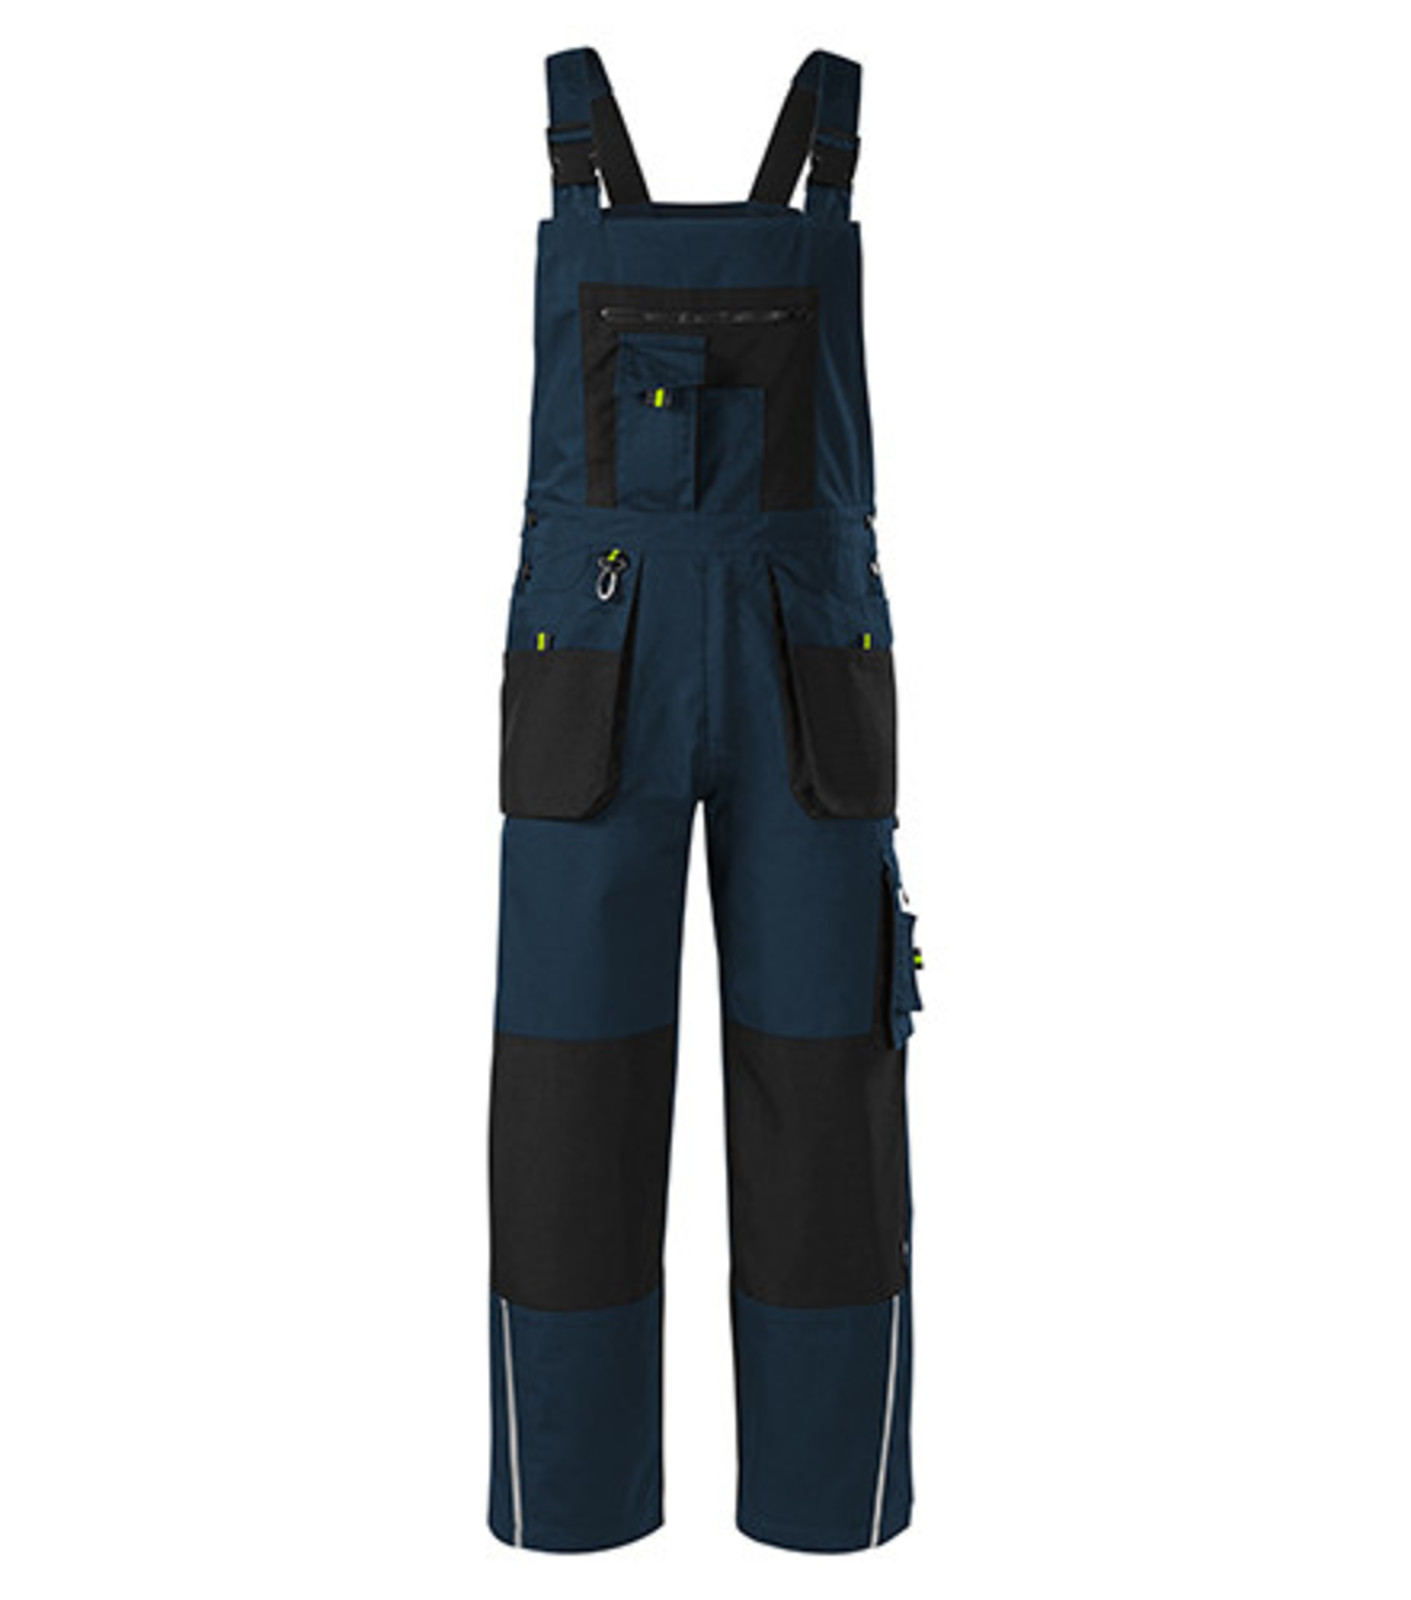 Montérkové nohavice s náprsenkou Adler Ranger W04 - veľkosť: 56-58, farba: tmavo modrá